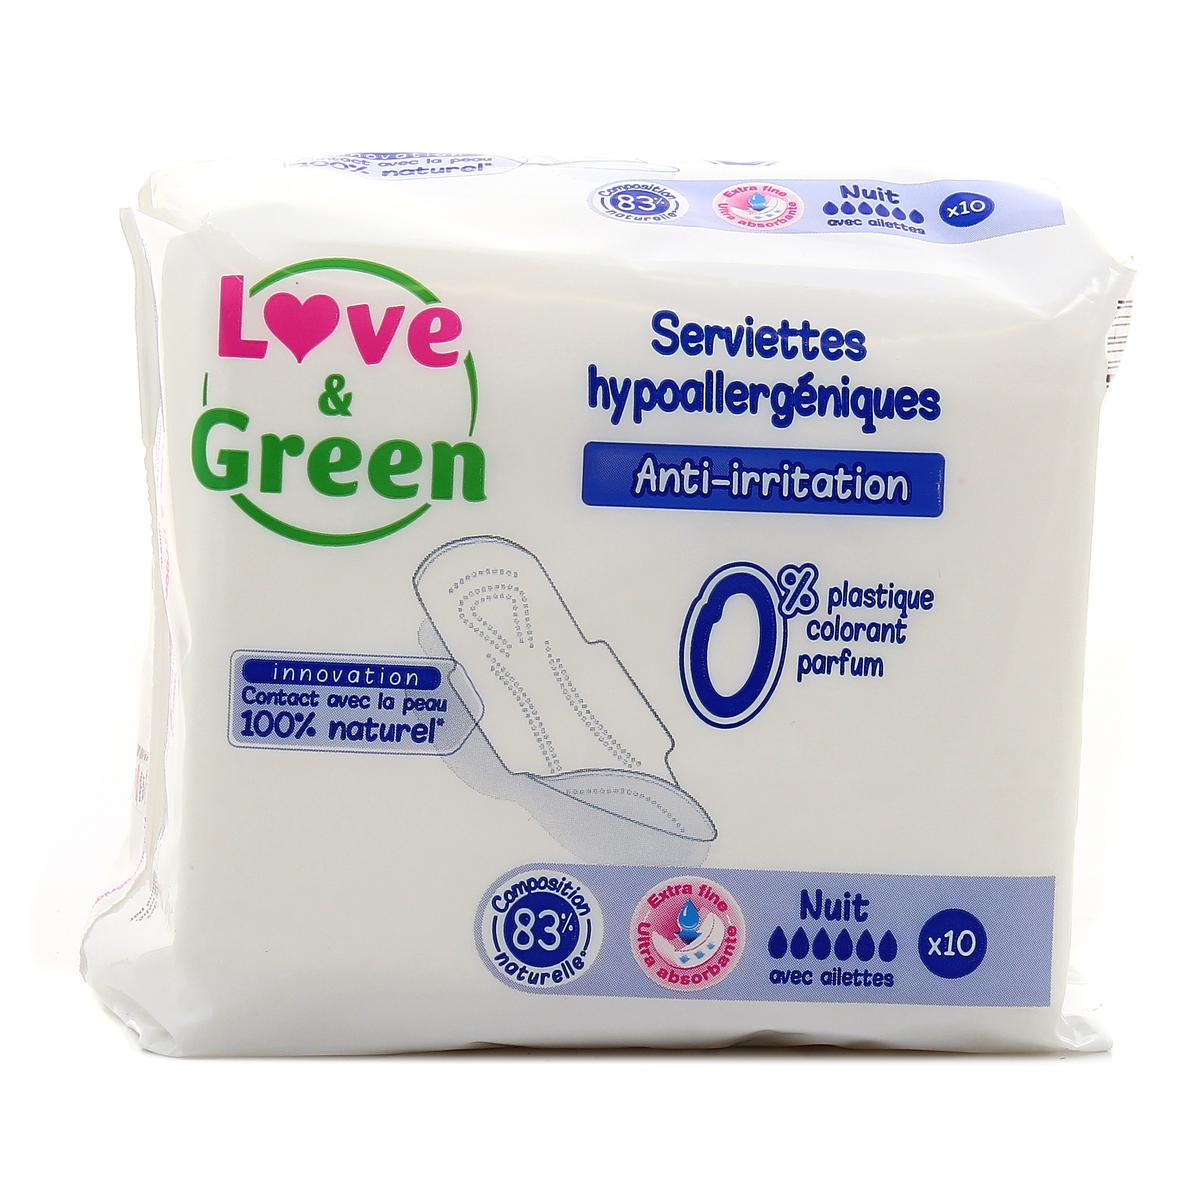 Love & Green Serviettes hygiéniques nuit avec aillettes anti-irritation